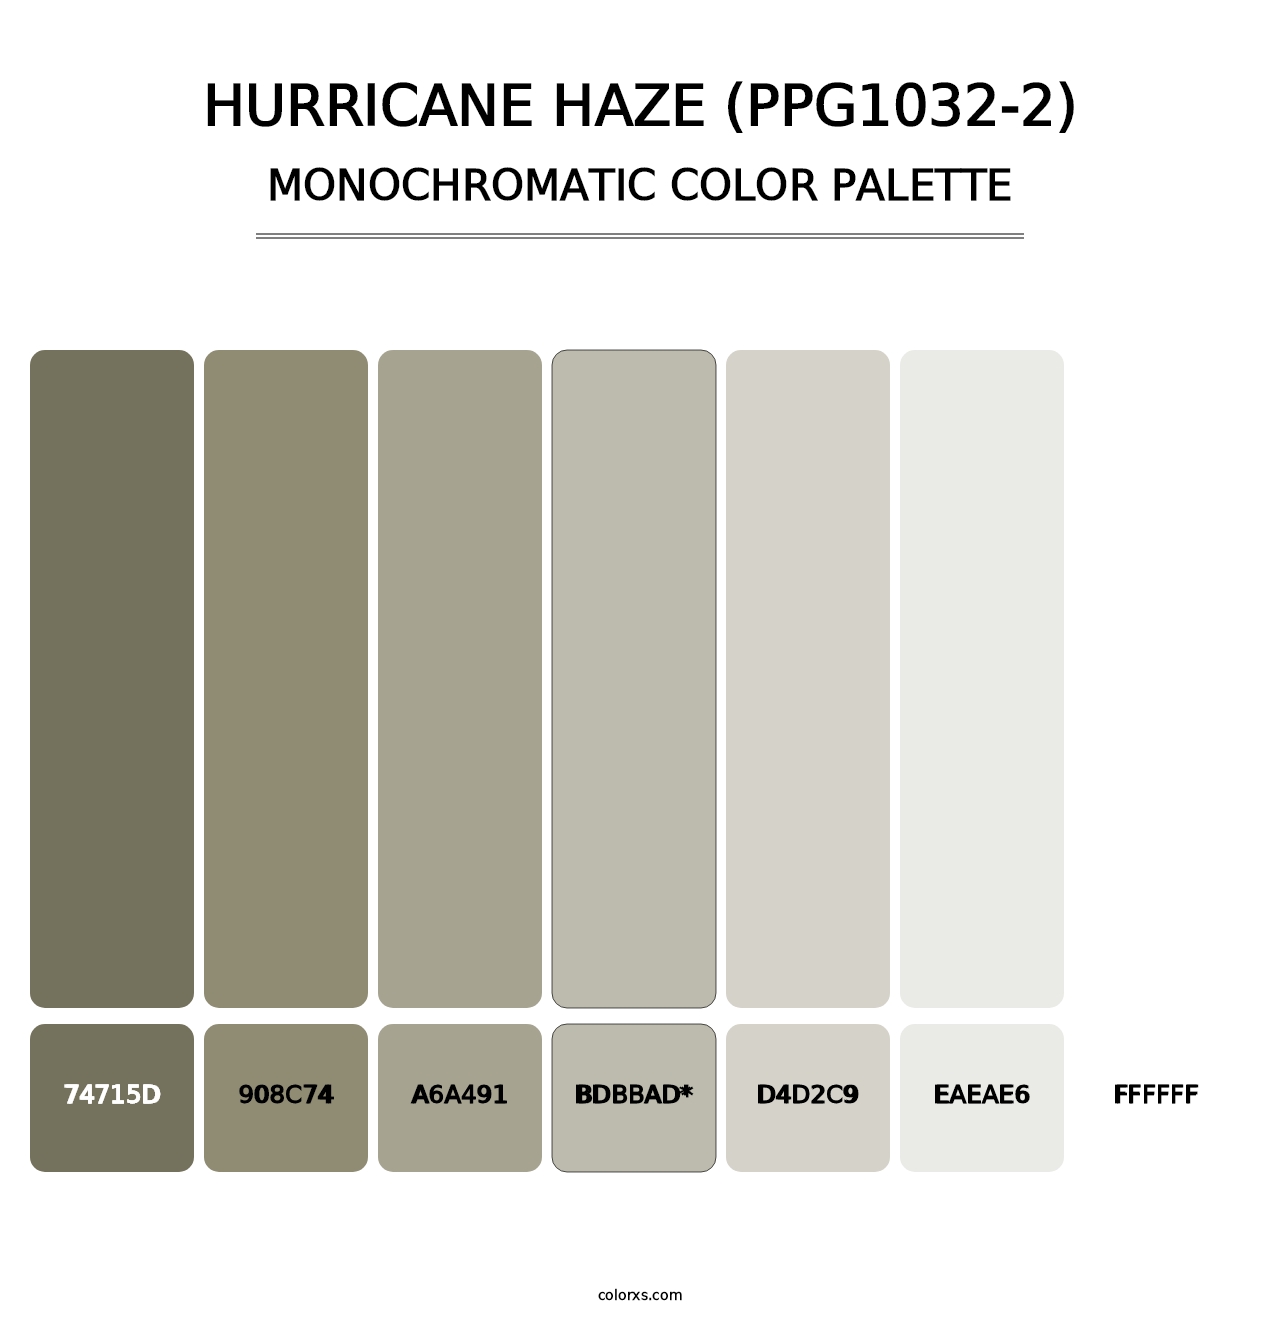 Hurricane Haze (PPG1032-2) - Monochromatic Color Palette